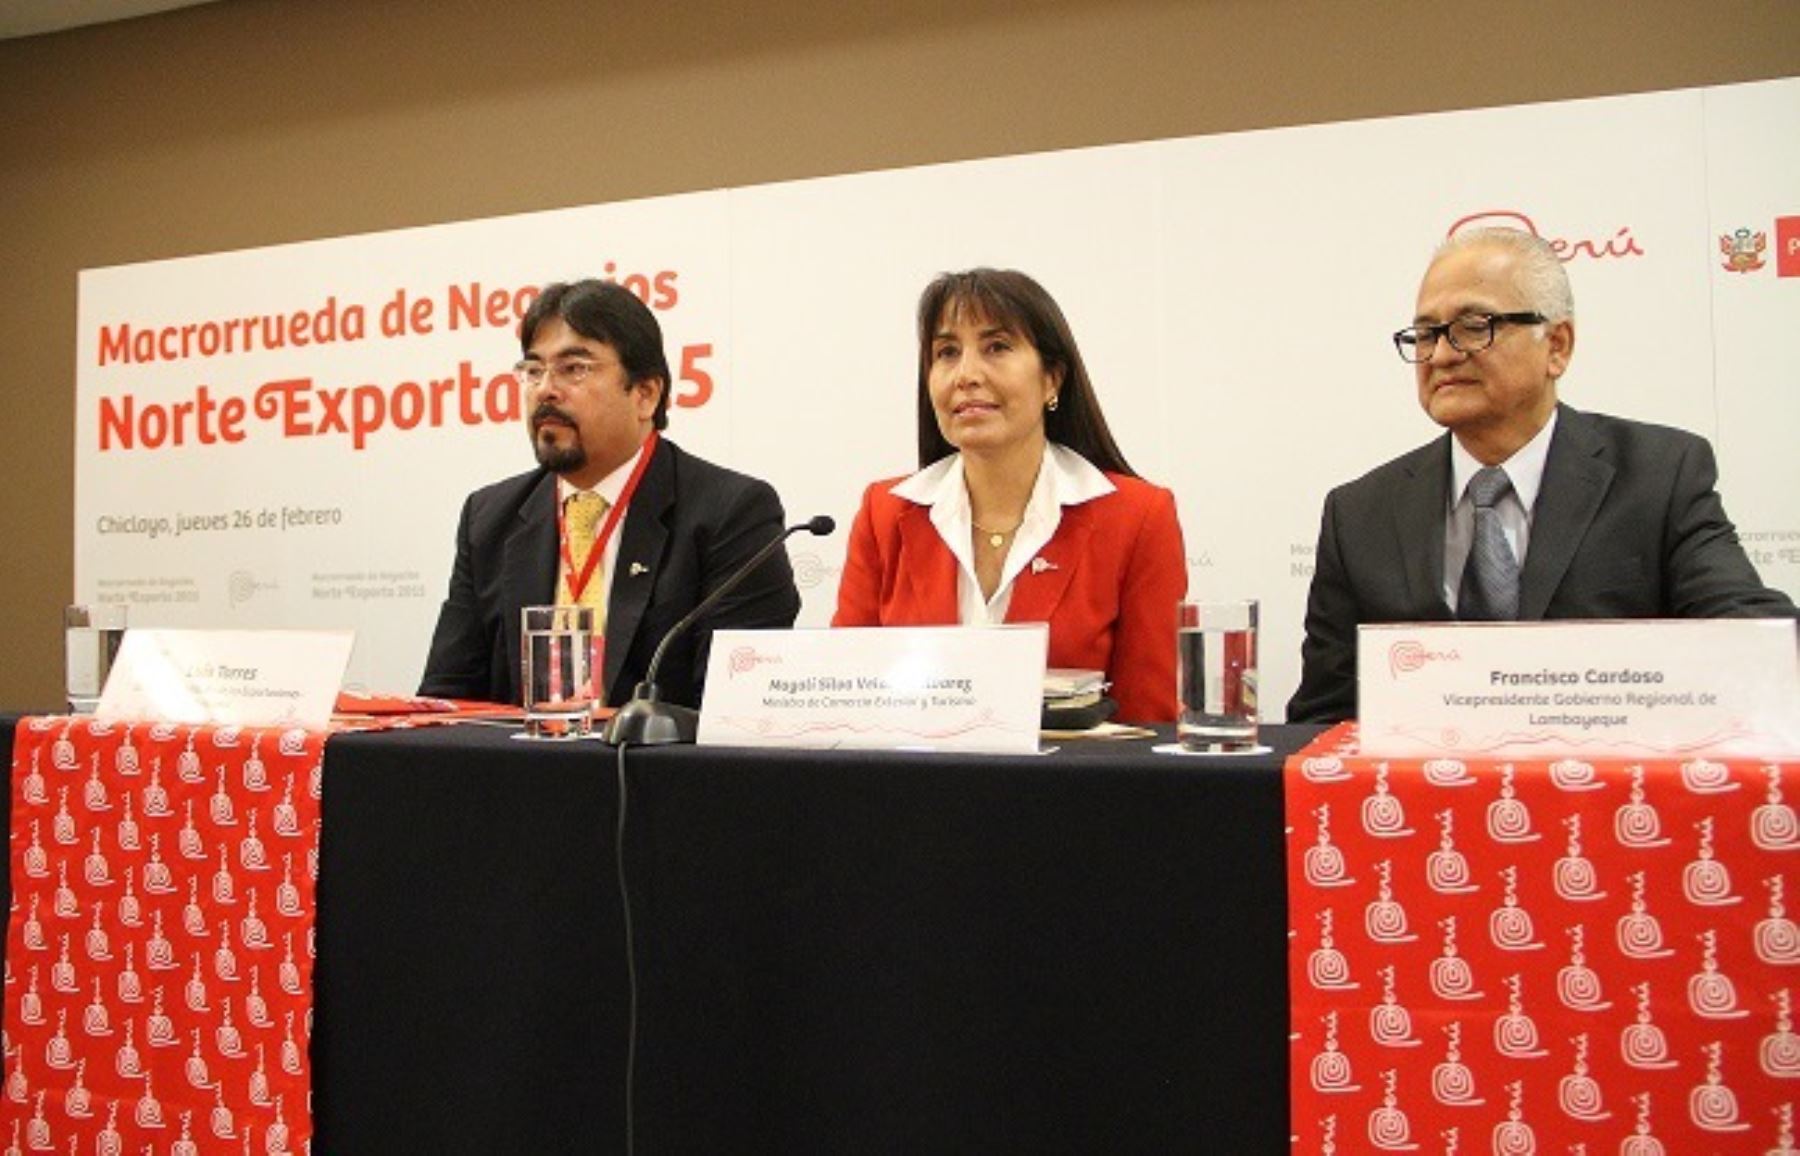 Titular del Mincetur, Magali Silva, inauguró certamen Norte Exporta 2015 en la ciudad de Chiclayo. ANDINA/Silvia Depaz